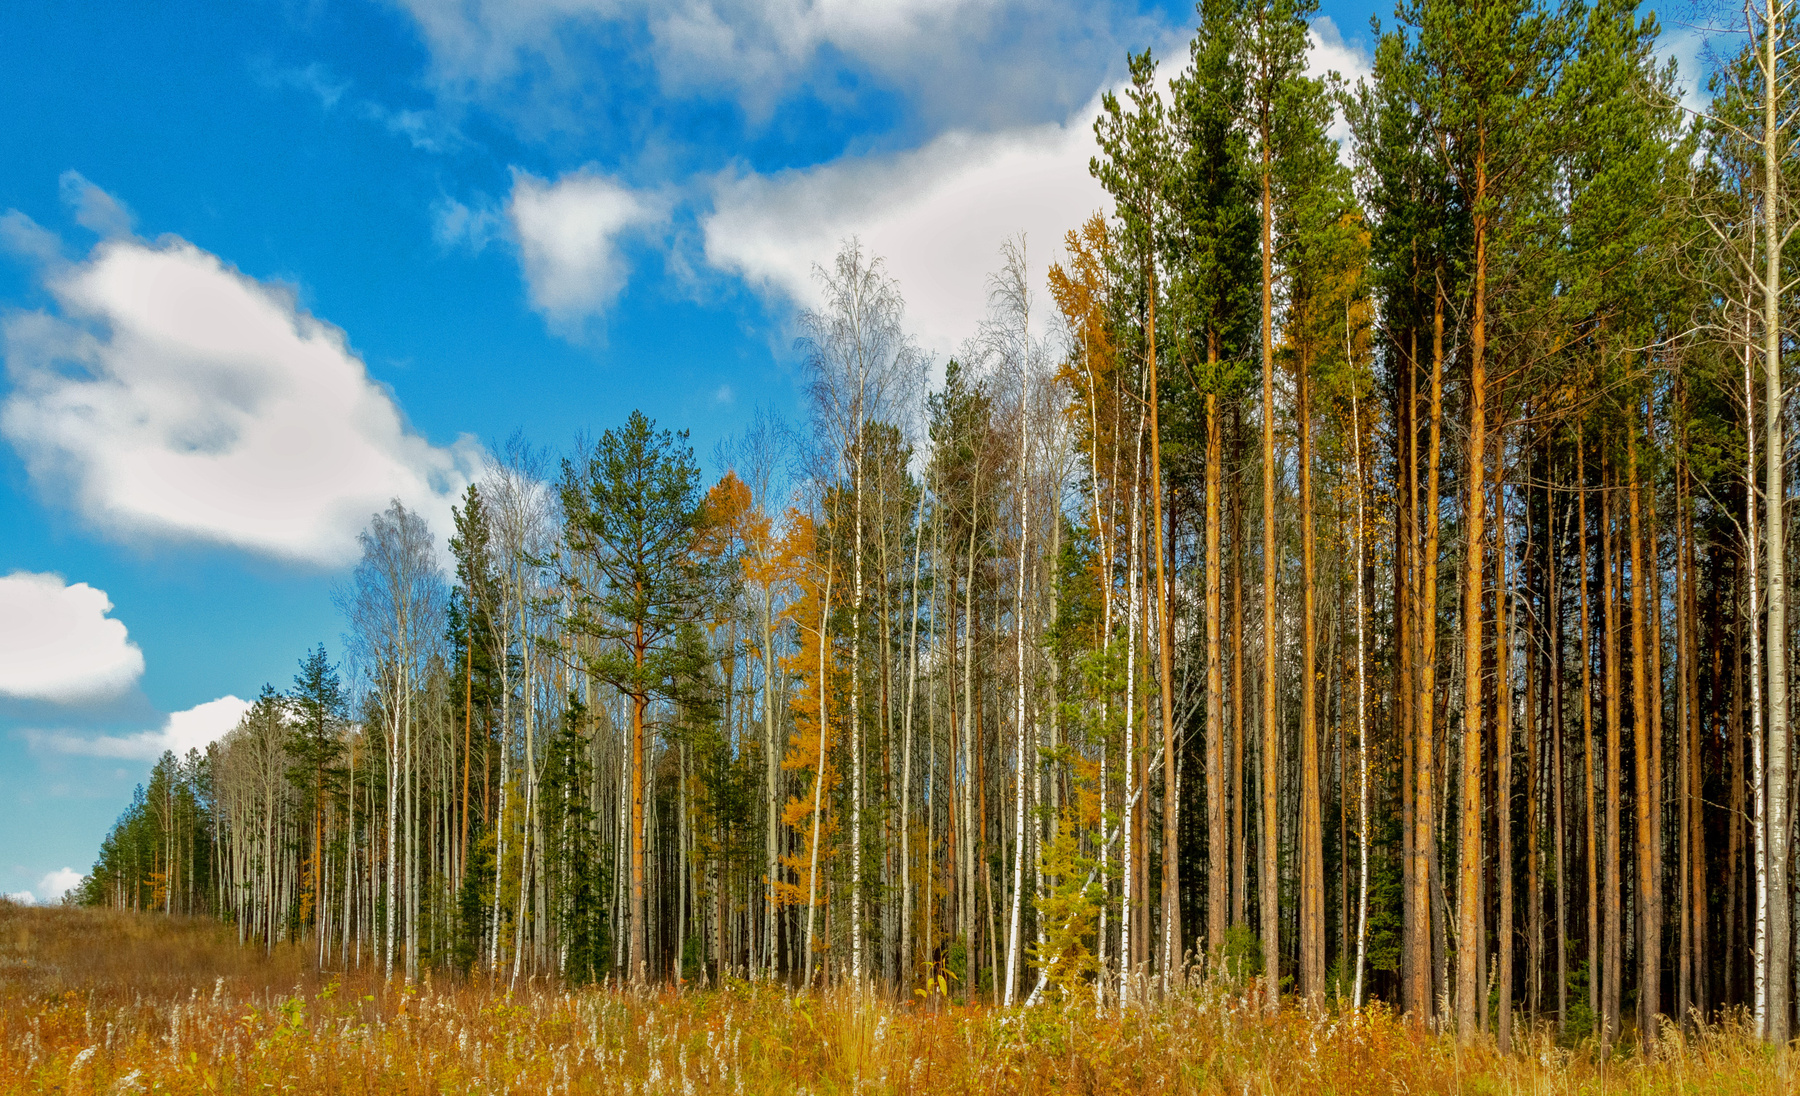 осенняя фоточка россия урал природа пейзаж лес деревья осень небо перспектива